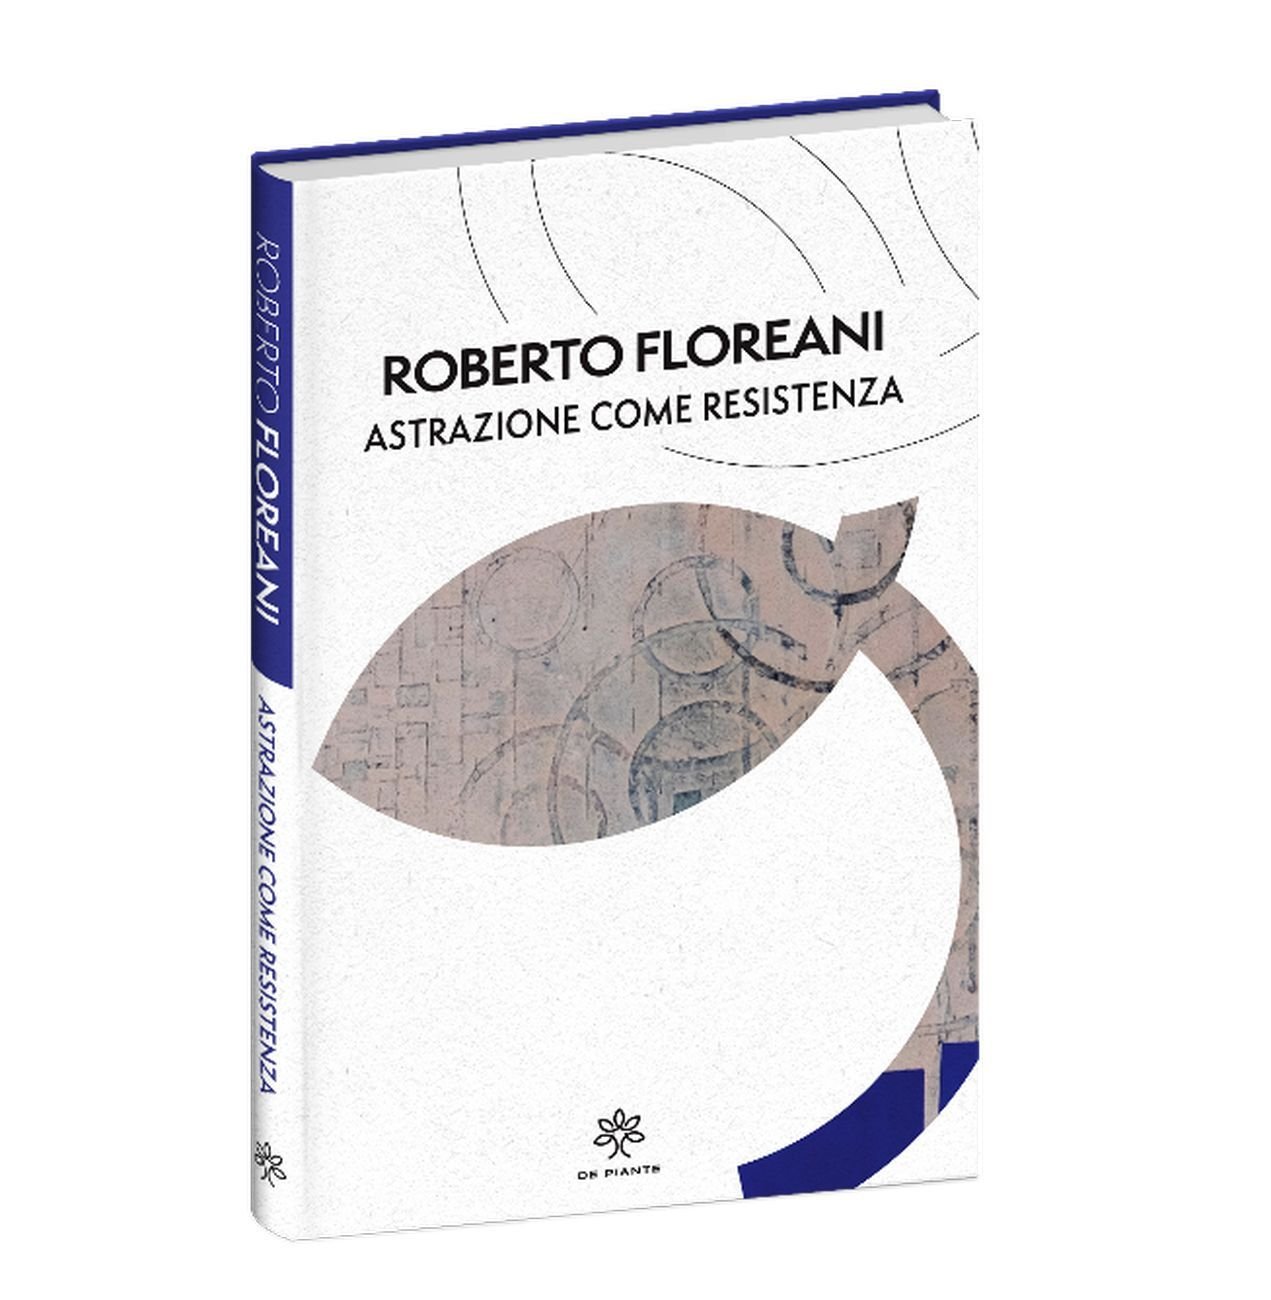 Roberto Floreani – Astrazione come resistenza (De Piante, Busto Arsizio 2021)